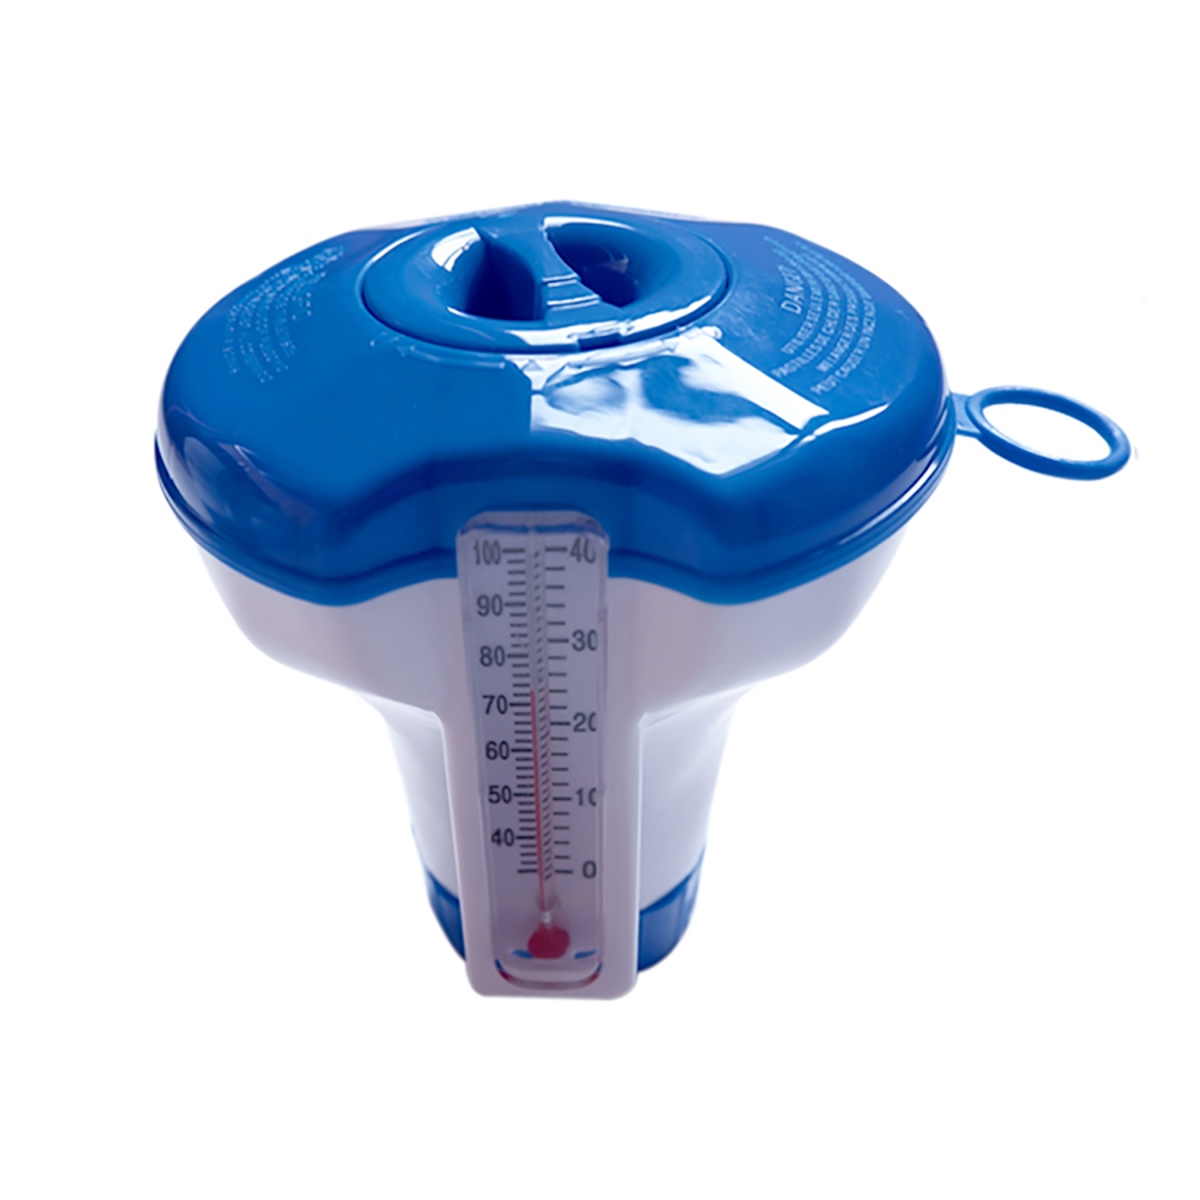 Smart MINI chlorine dispenser incl. thermometer, diameter 11 cm, blue, for 20g chlorine tablets, for quick up pools and whirlpools Smart MINI chlorine dispenser incl. thermometer, diameter 11 cm, blue, for 20g chlorine tablets, for quick up pools and whirlpools